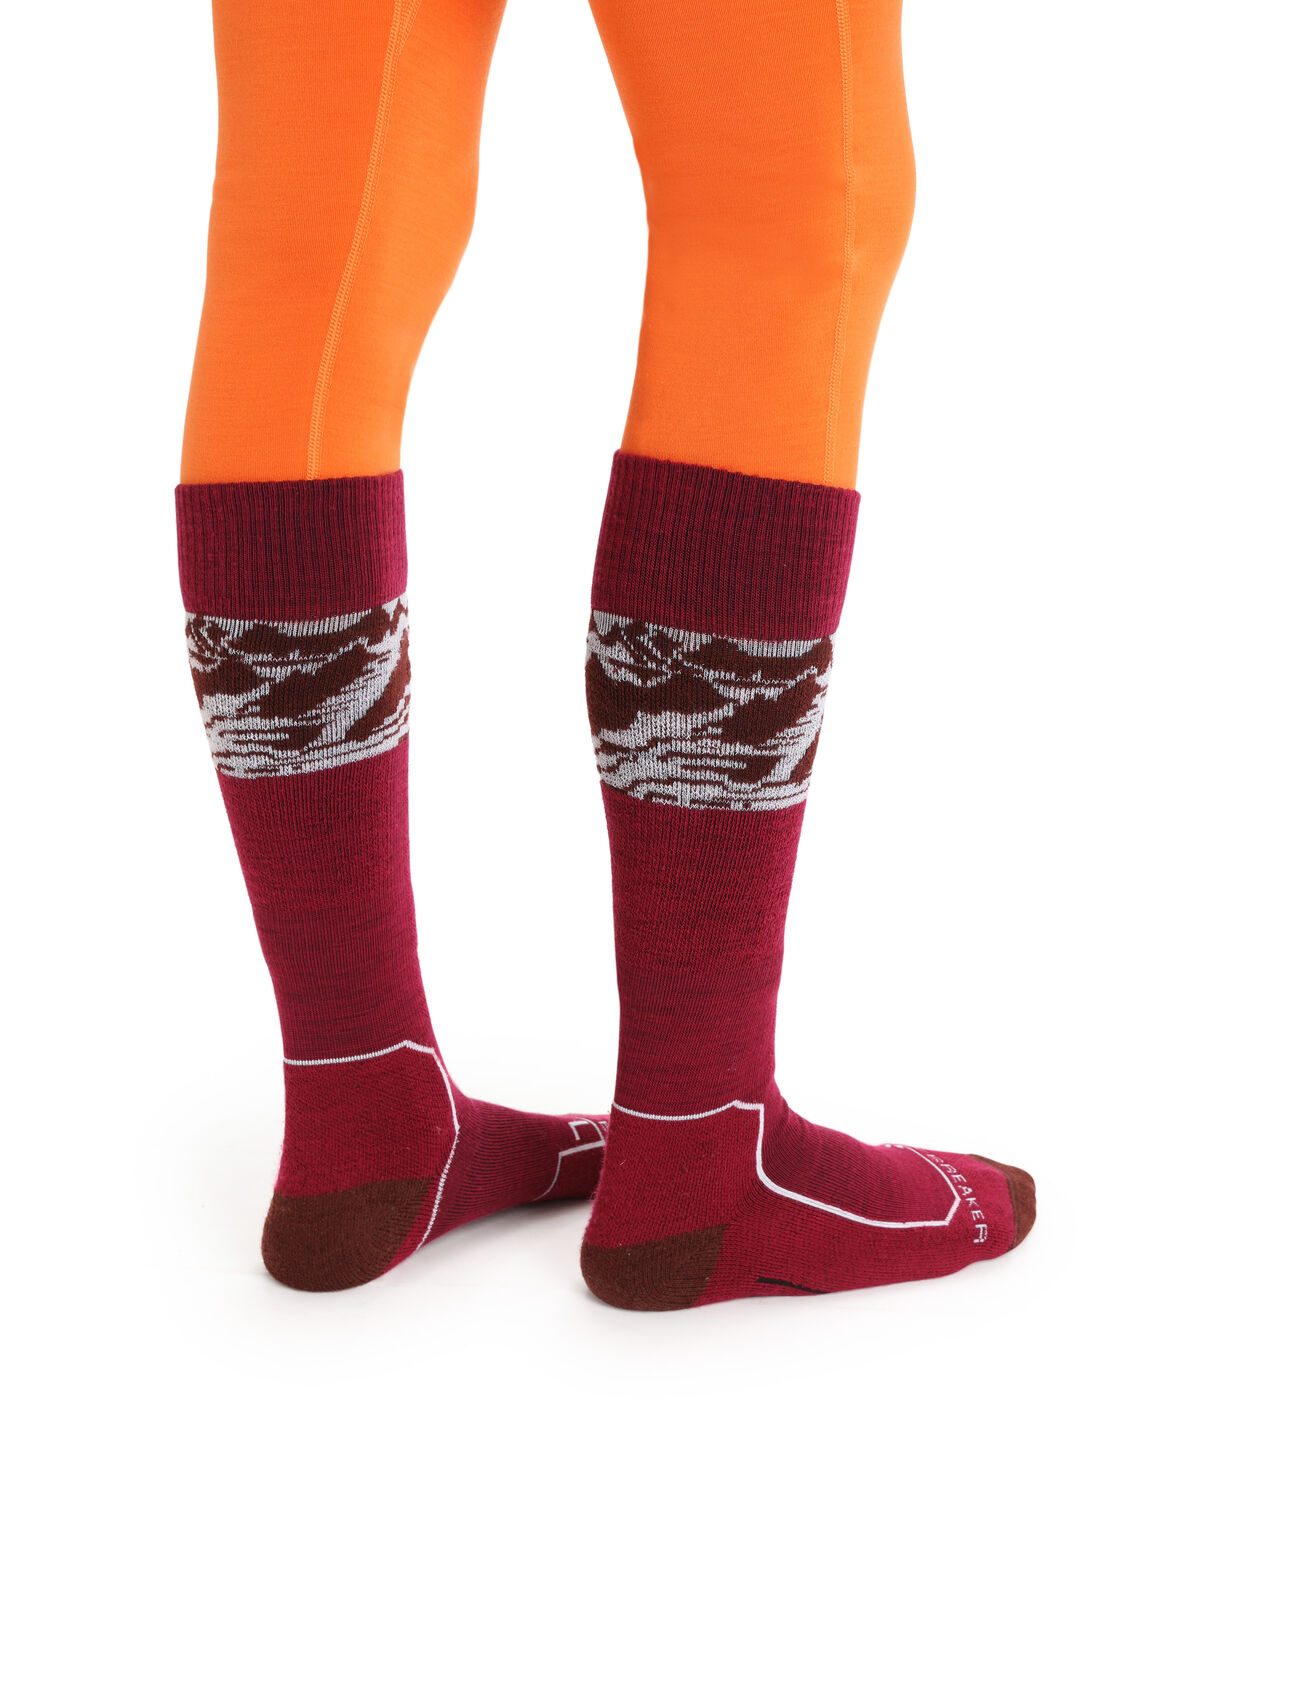 Dámské Merino ponožky Ski+ Light Over the Calf Alps 3D Lehce polstrované lyžařské ponožky Ski+ Light Over the Calf Alps 3D jsou vyrobeny z odolné a prodyšné směsi merino vlny – jsou ideální na lyžování na sjezdovce i ve volném terénu.